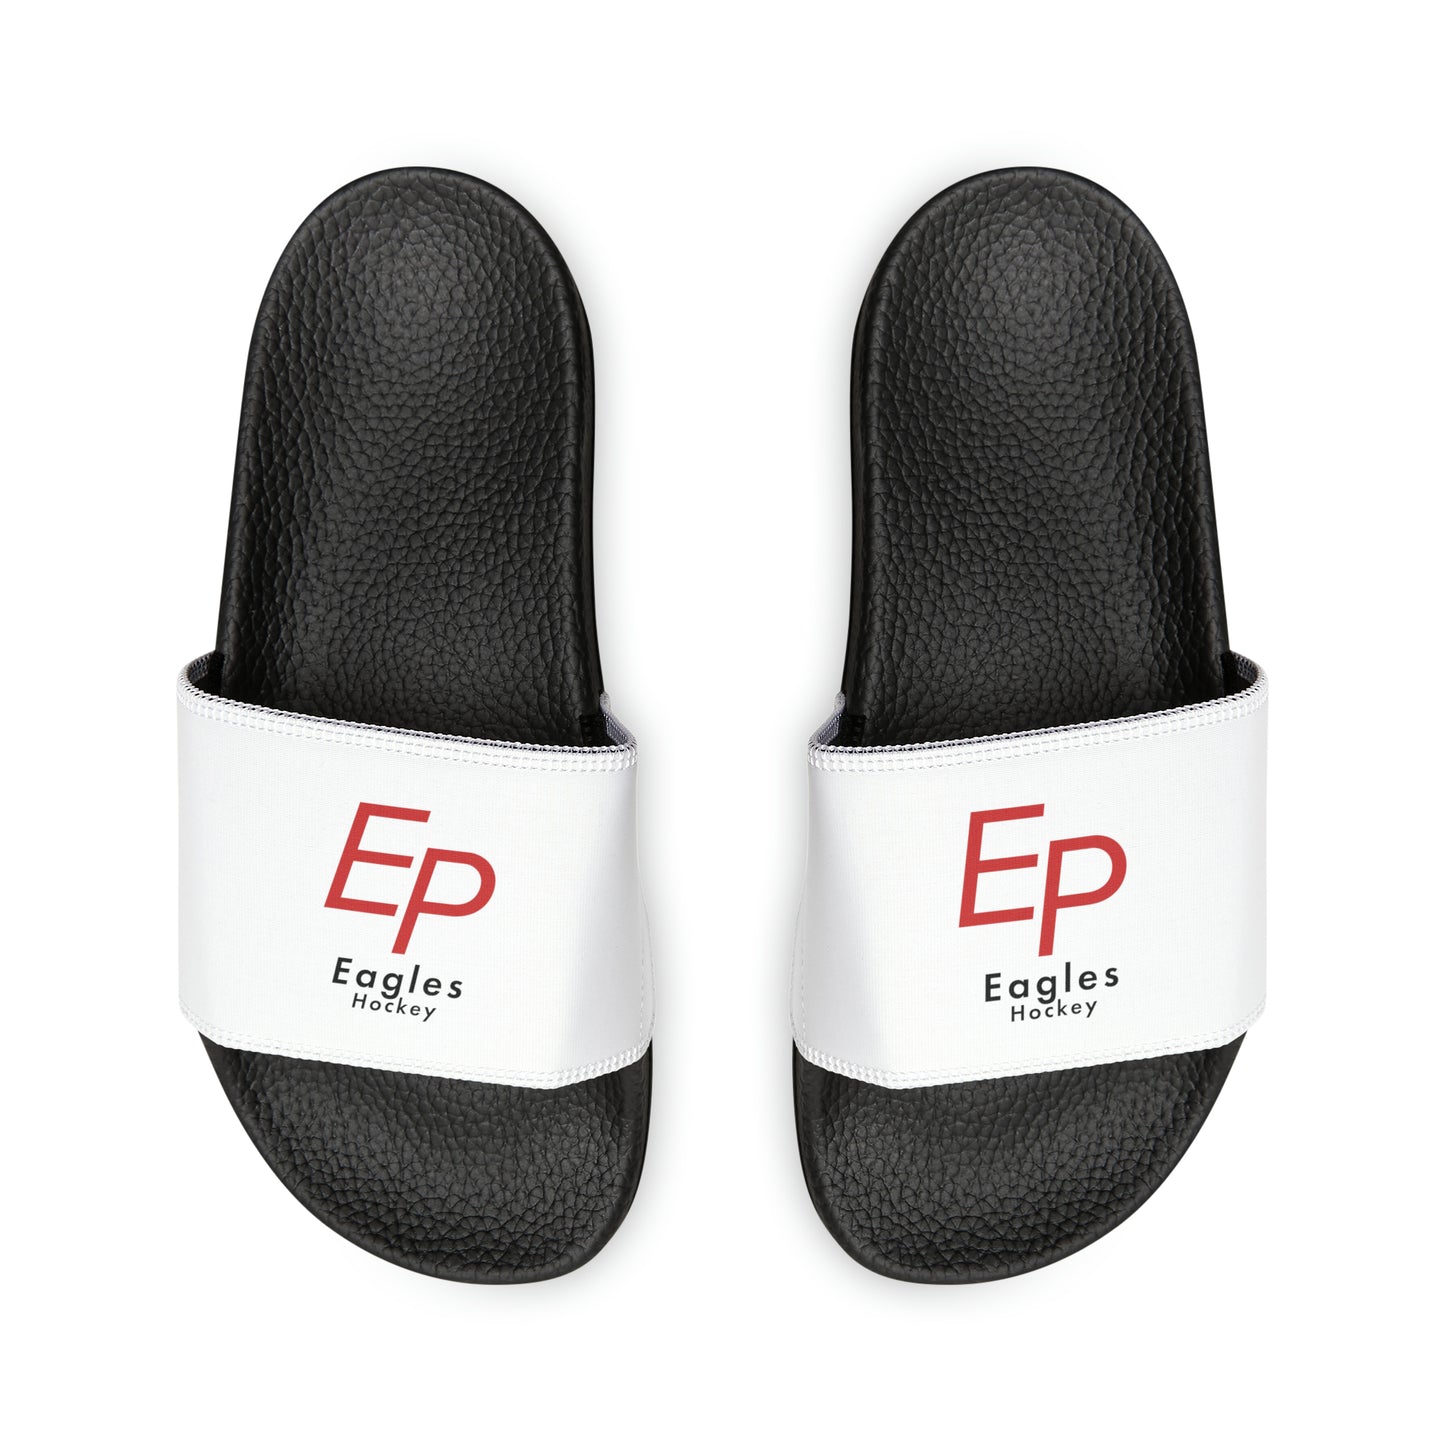 Eden Prairie Men's PU Slide Sandals